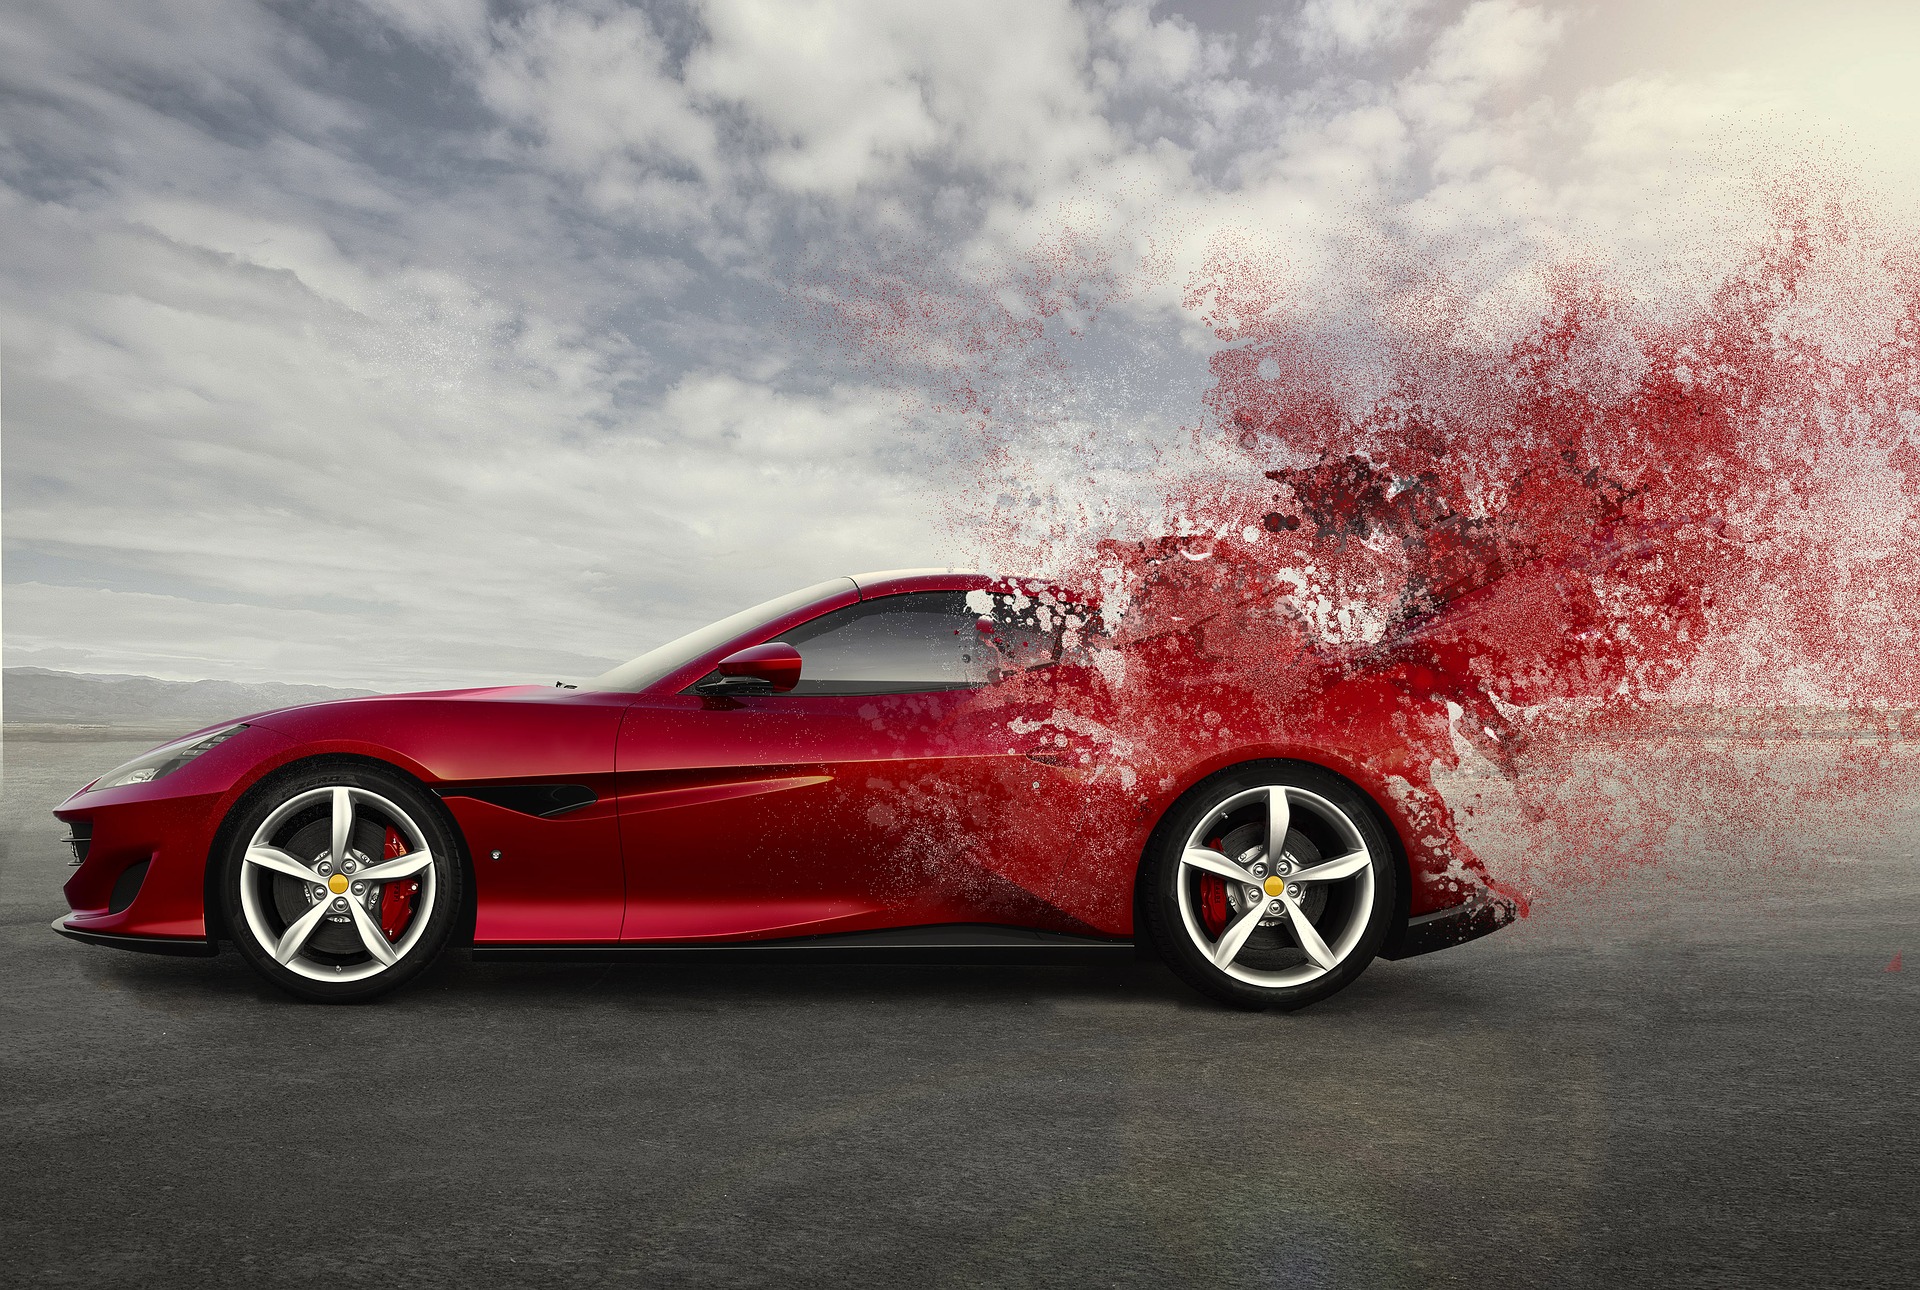 Ferrari bez hamulców, czyli co warto wiedzieć o ADHD?